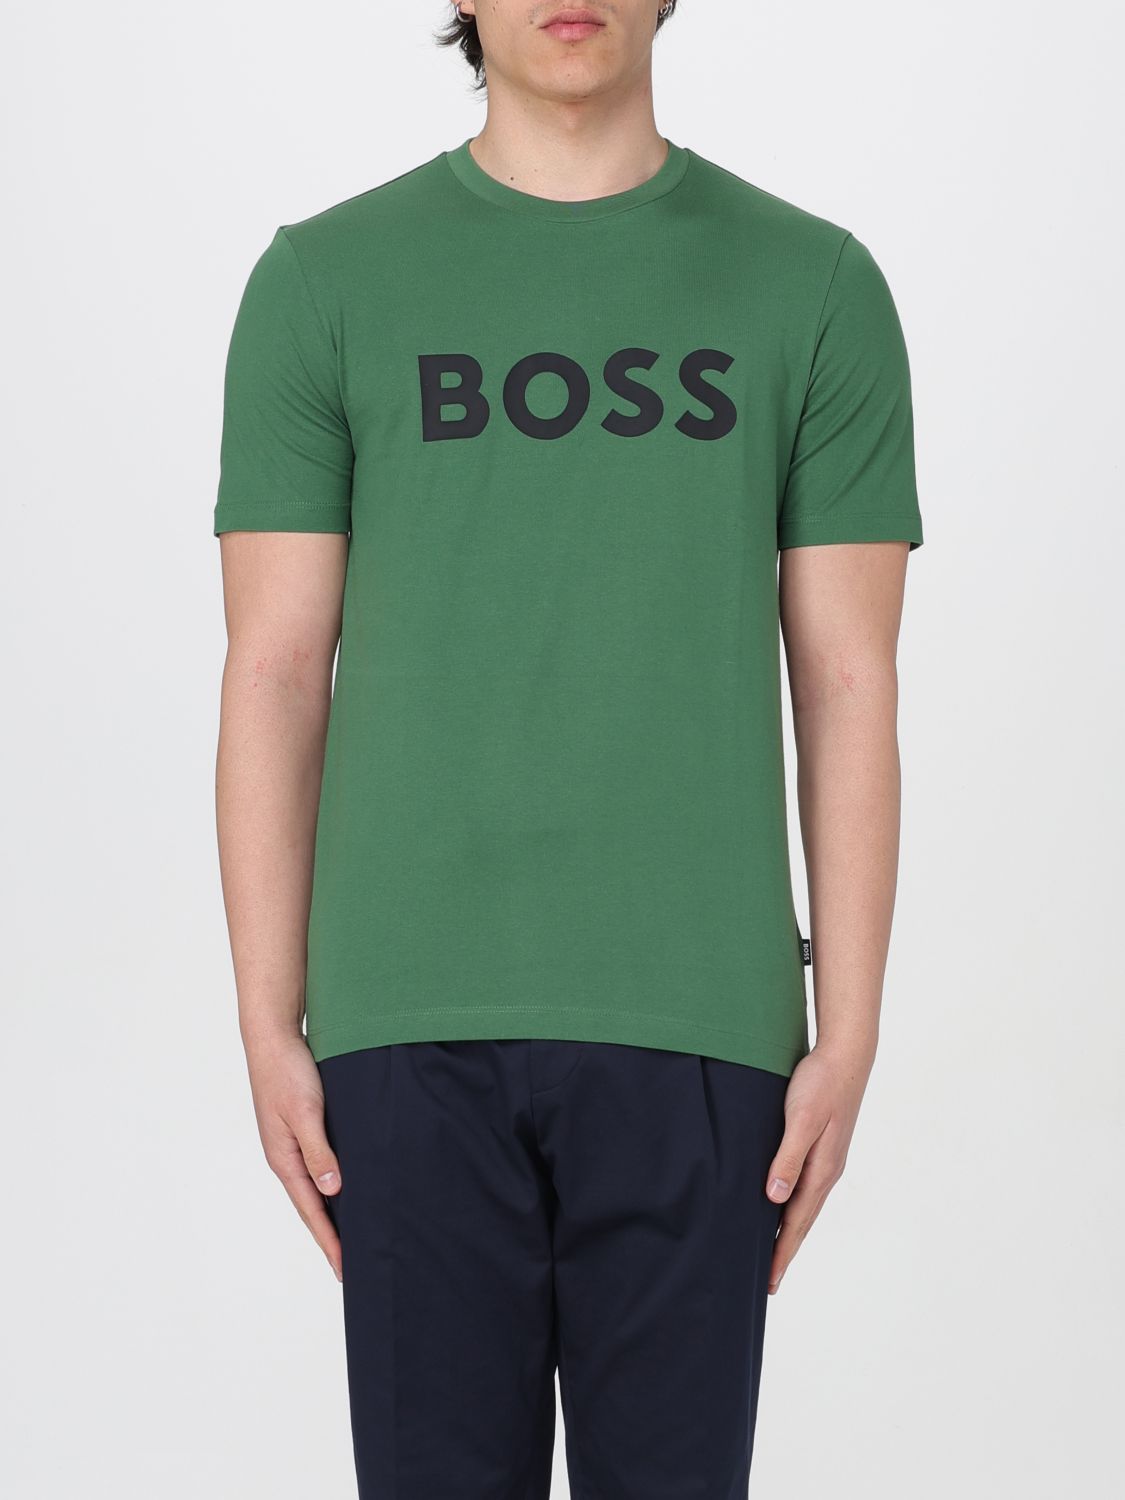 T恤 BOSS 男士 颜色 绿色